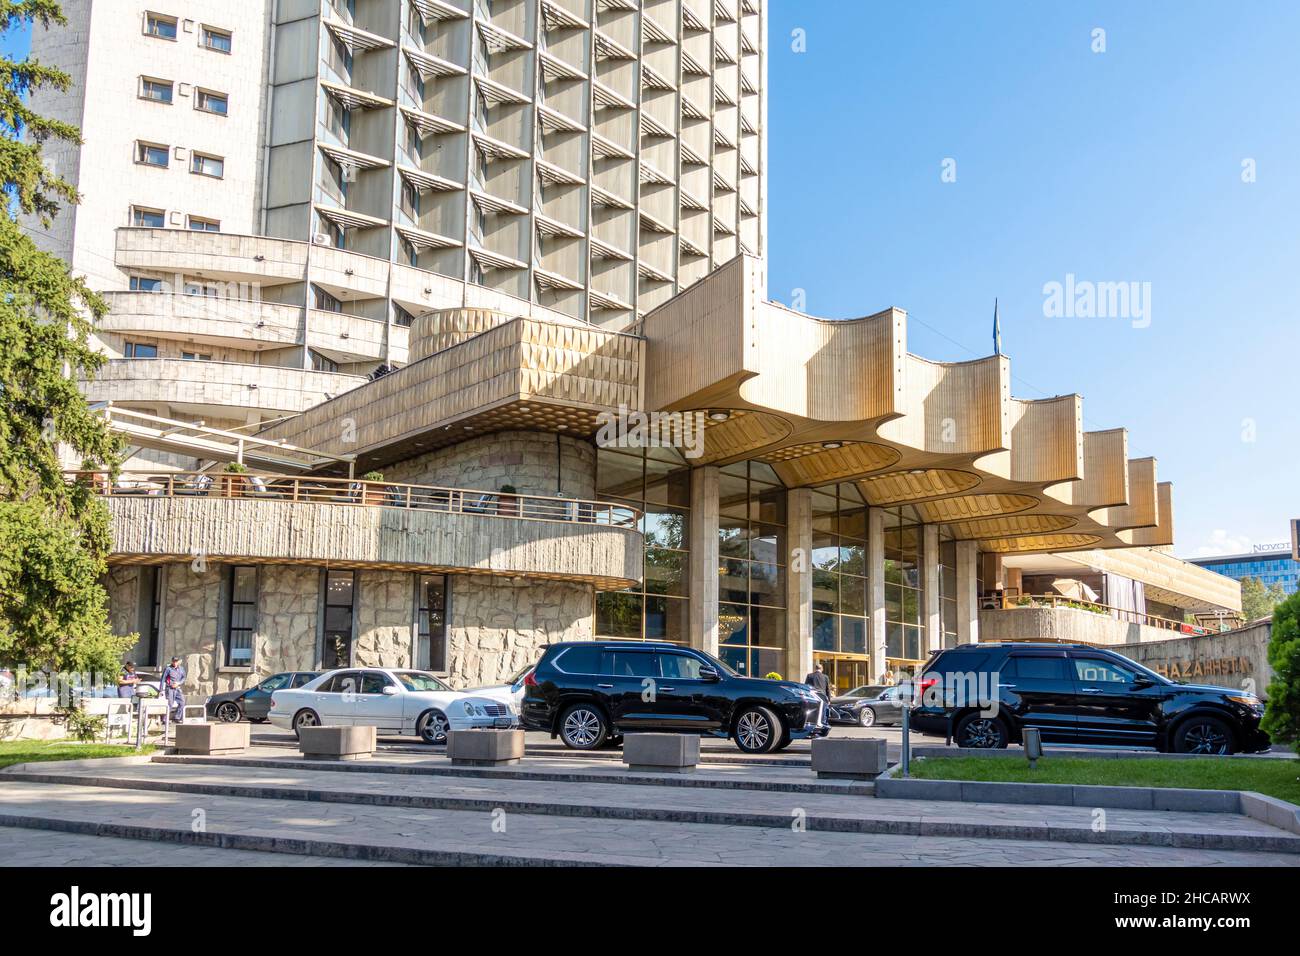 Qazaqstan Qonaq - Hôtel historique et bâtiment historique, 1972, Almaty, Kazakhstan, Asie centrale Banque D'Images